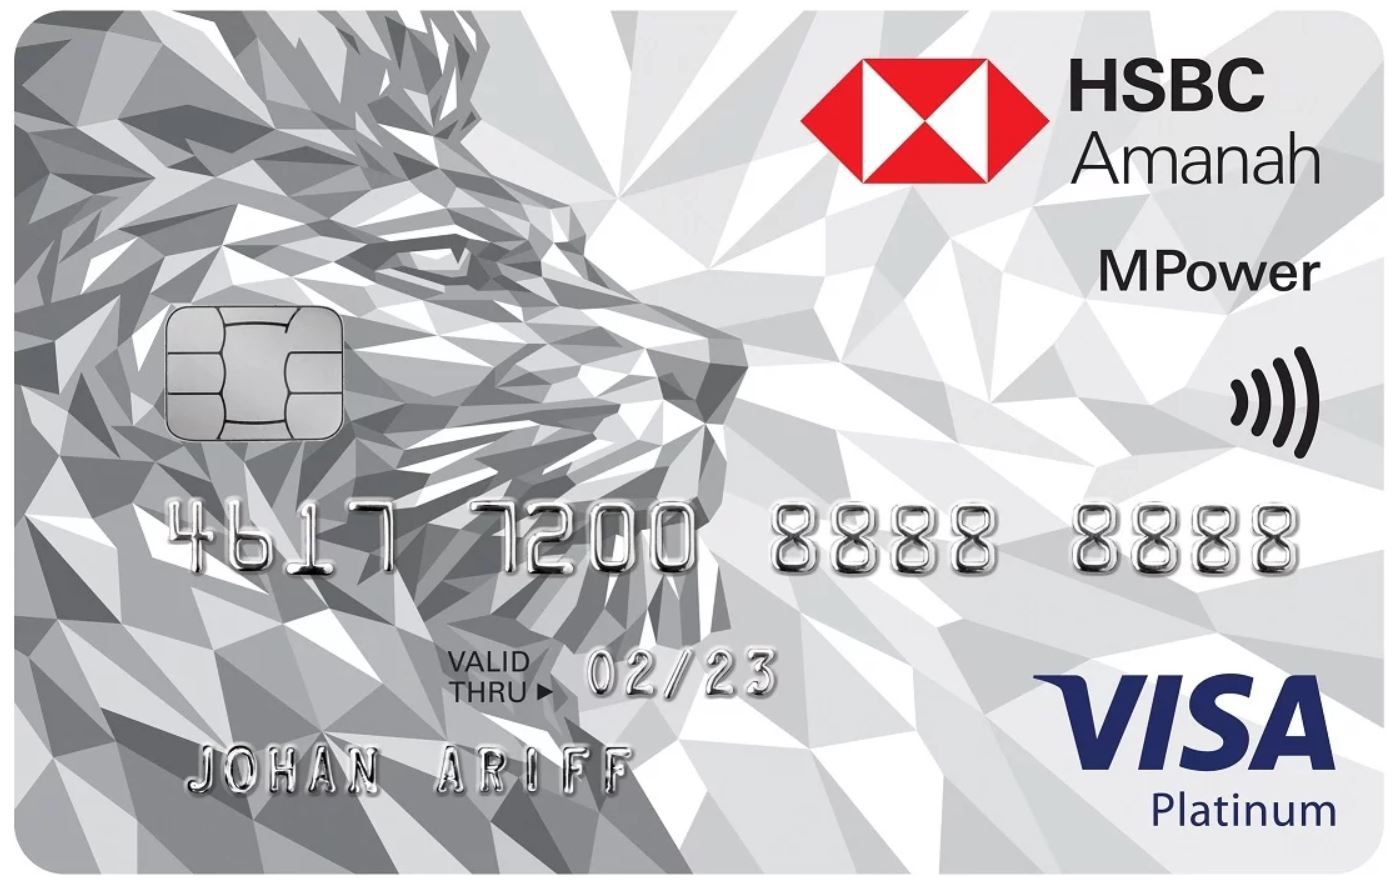 HSBC Amanah MPower Platinum Visa